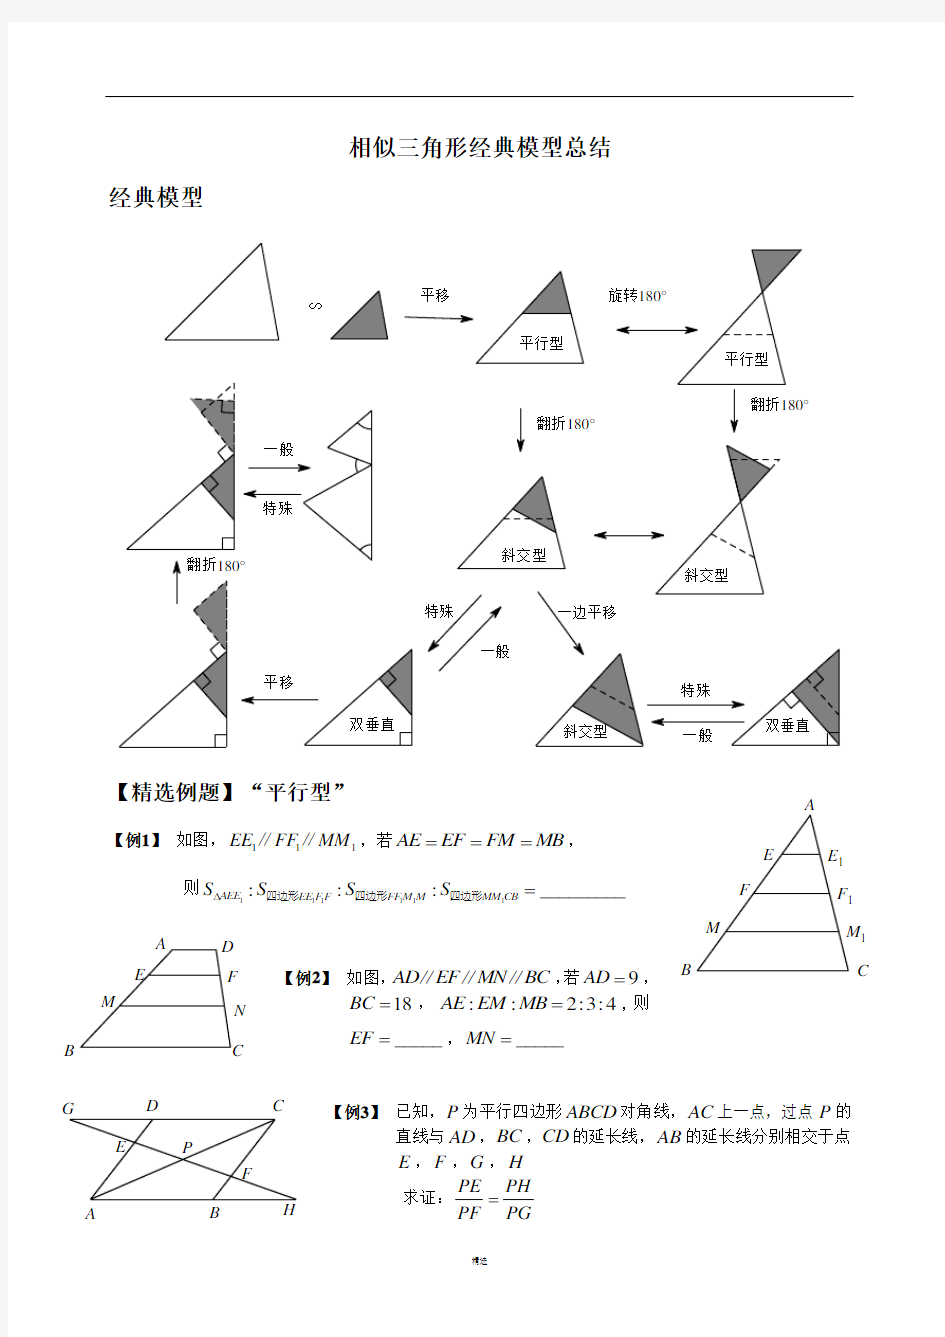 相似三角形经典模型总结与例题分类(超全)